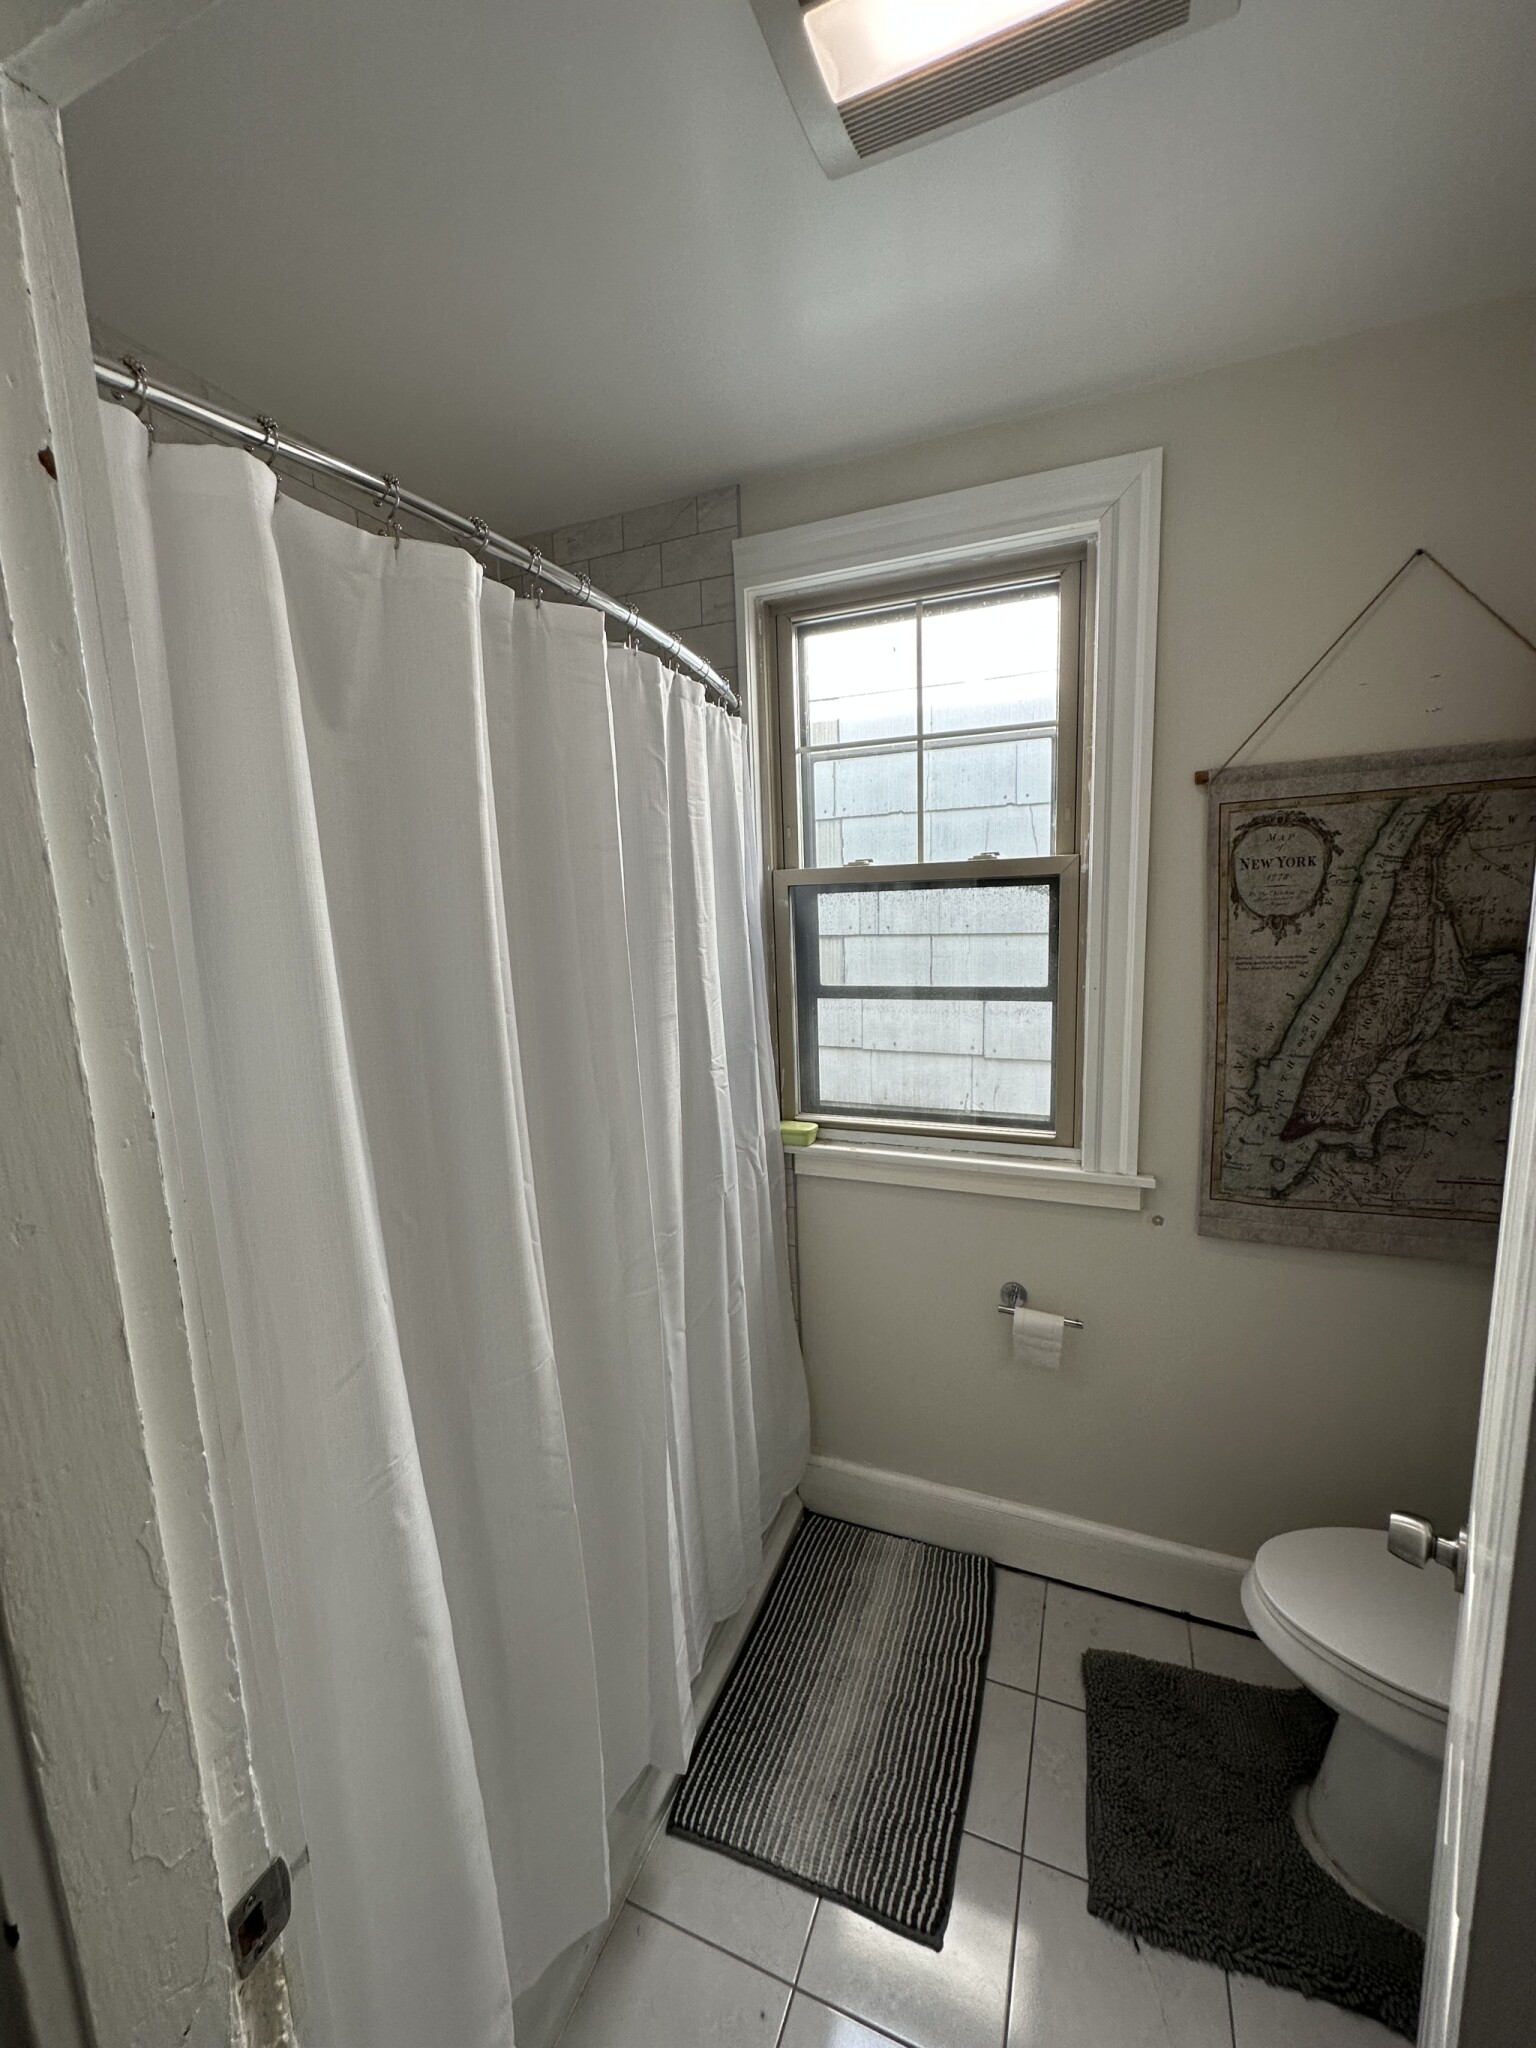 Photos of apartment on Lexington St.,Boston MA 02128